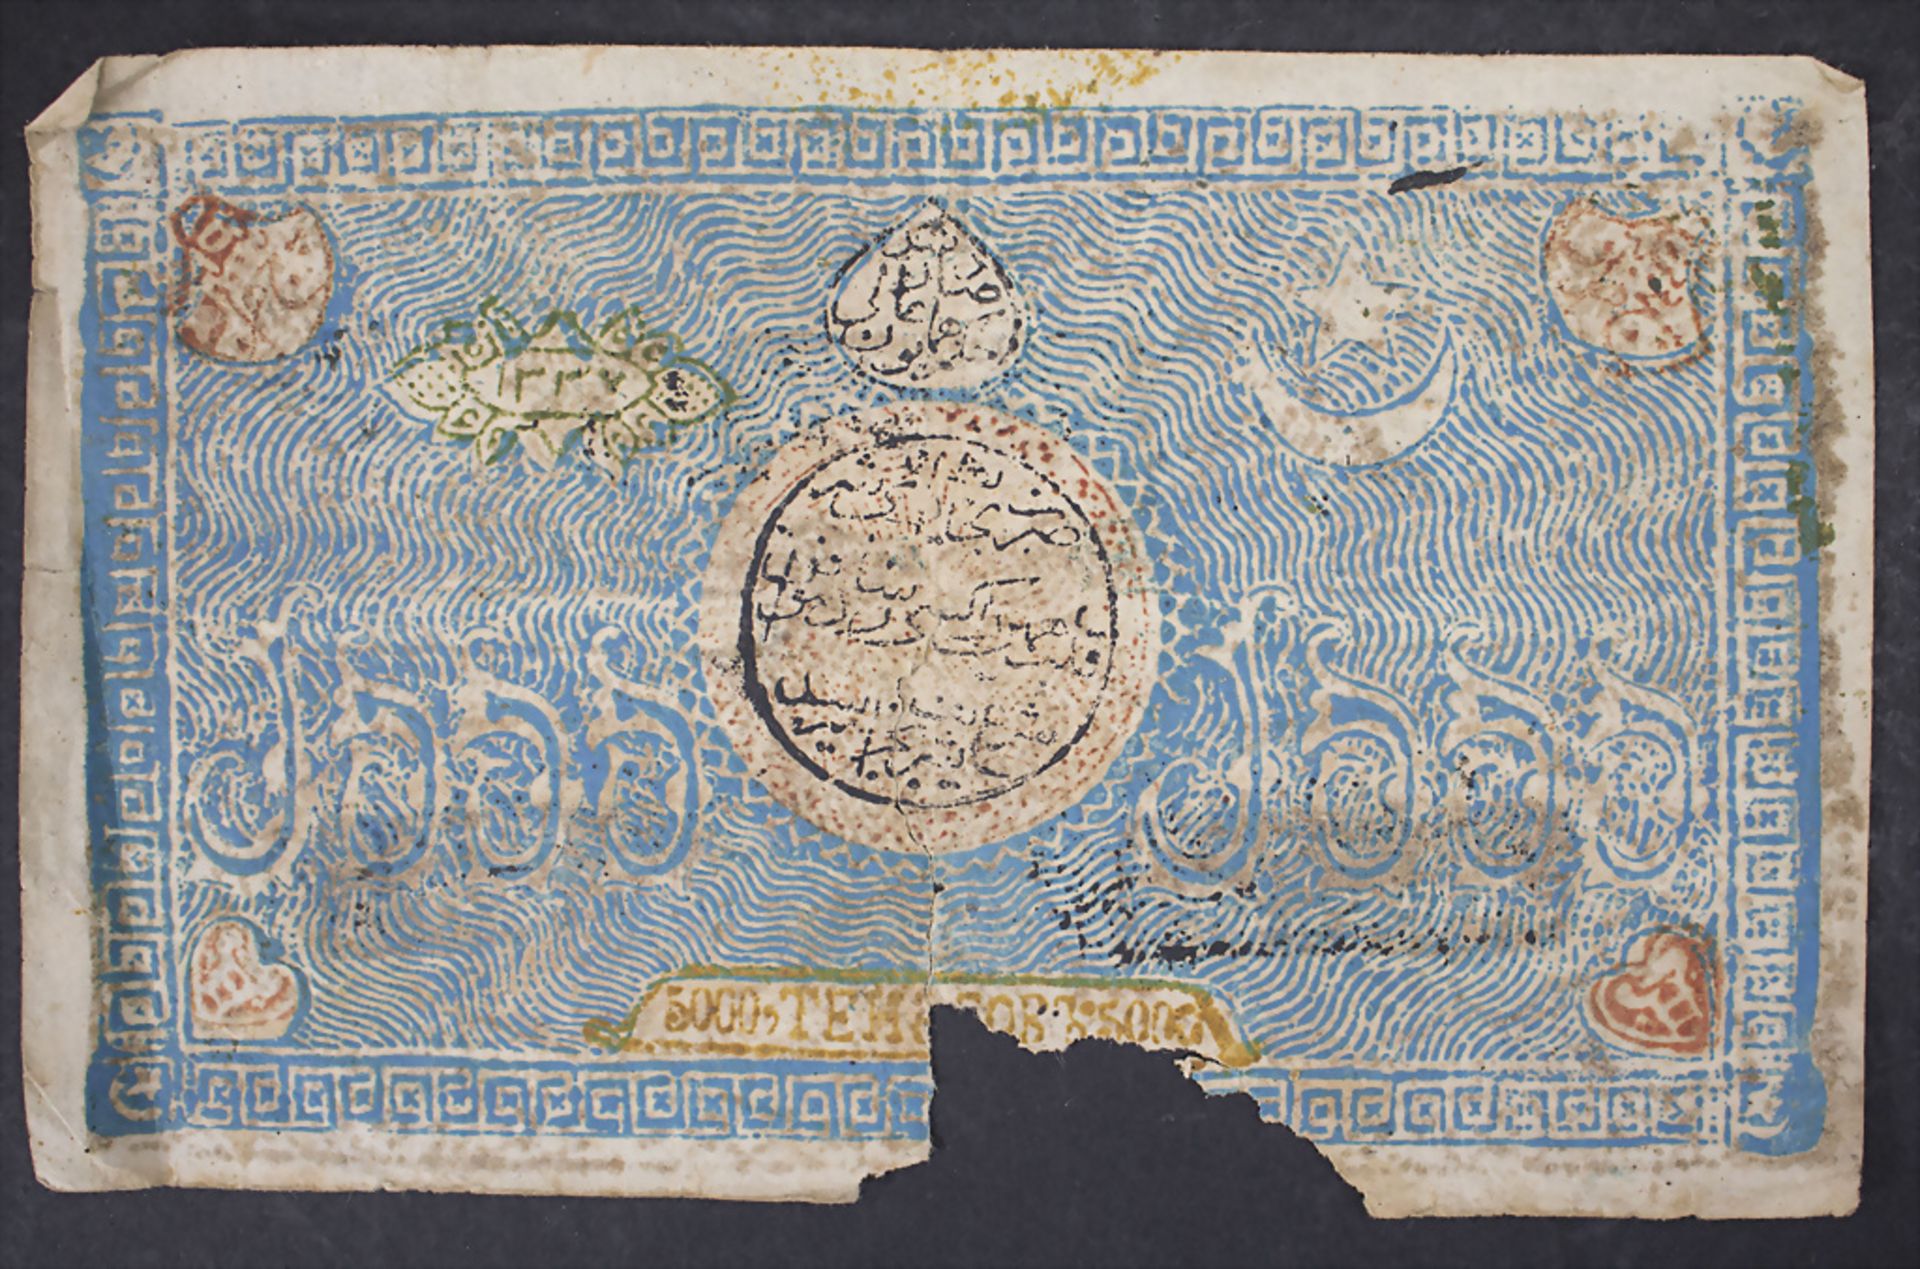 Sammlung Banknoten / A collection of banknotes - Bild 3 aus 5